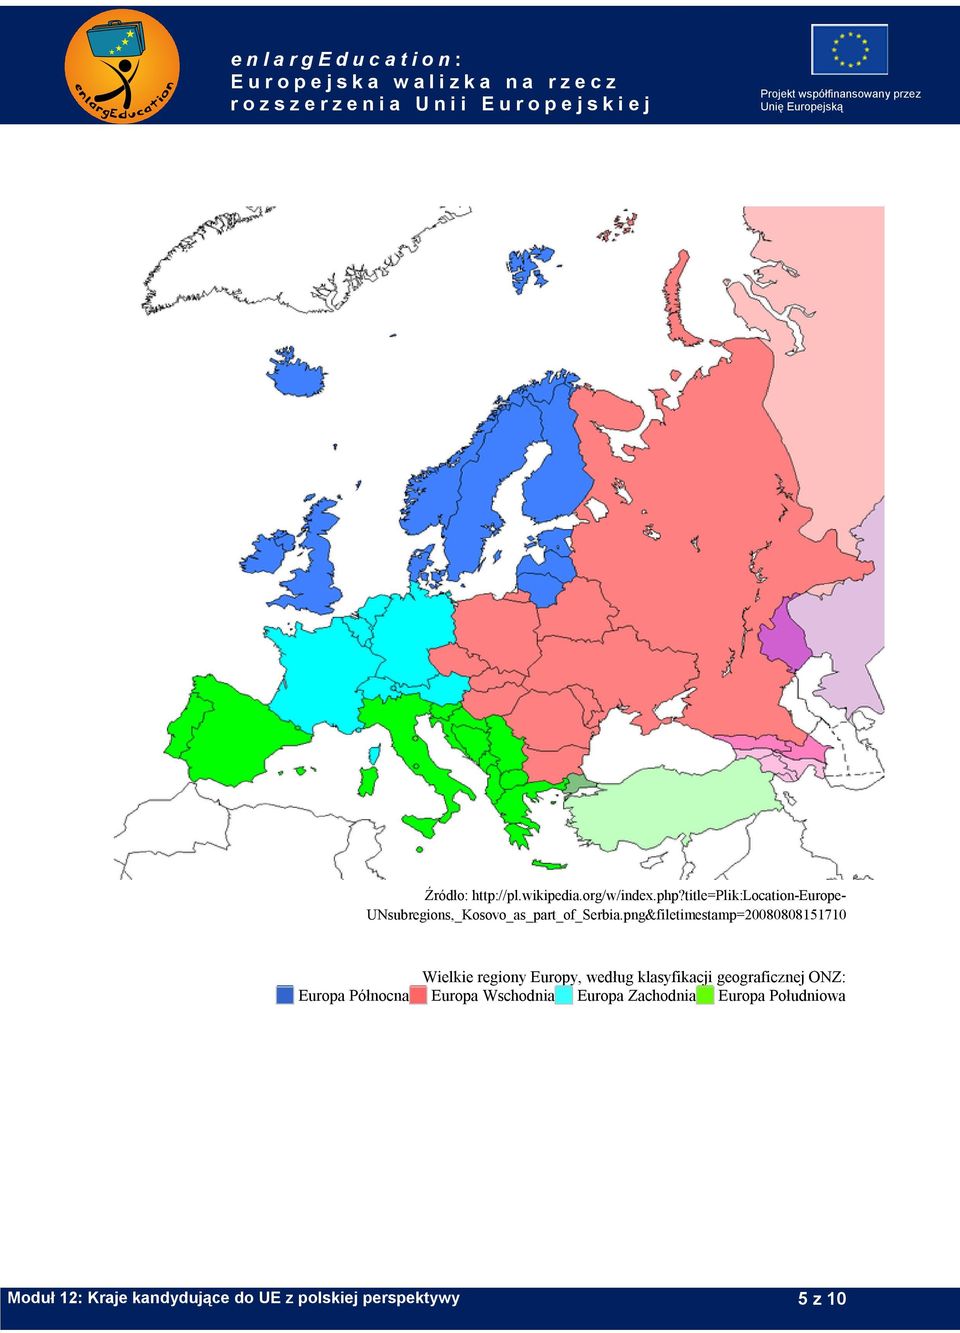 png&filetimestamp=20080808151710 Wielkie regiony Europy, według klasyfikacji